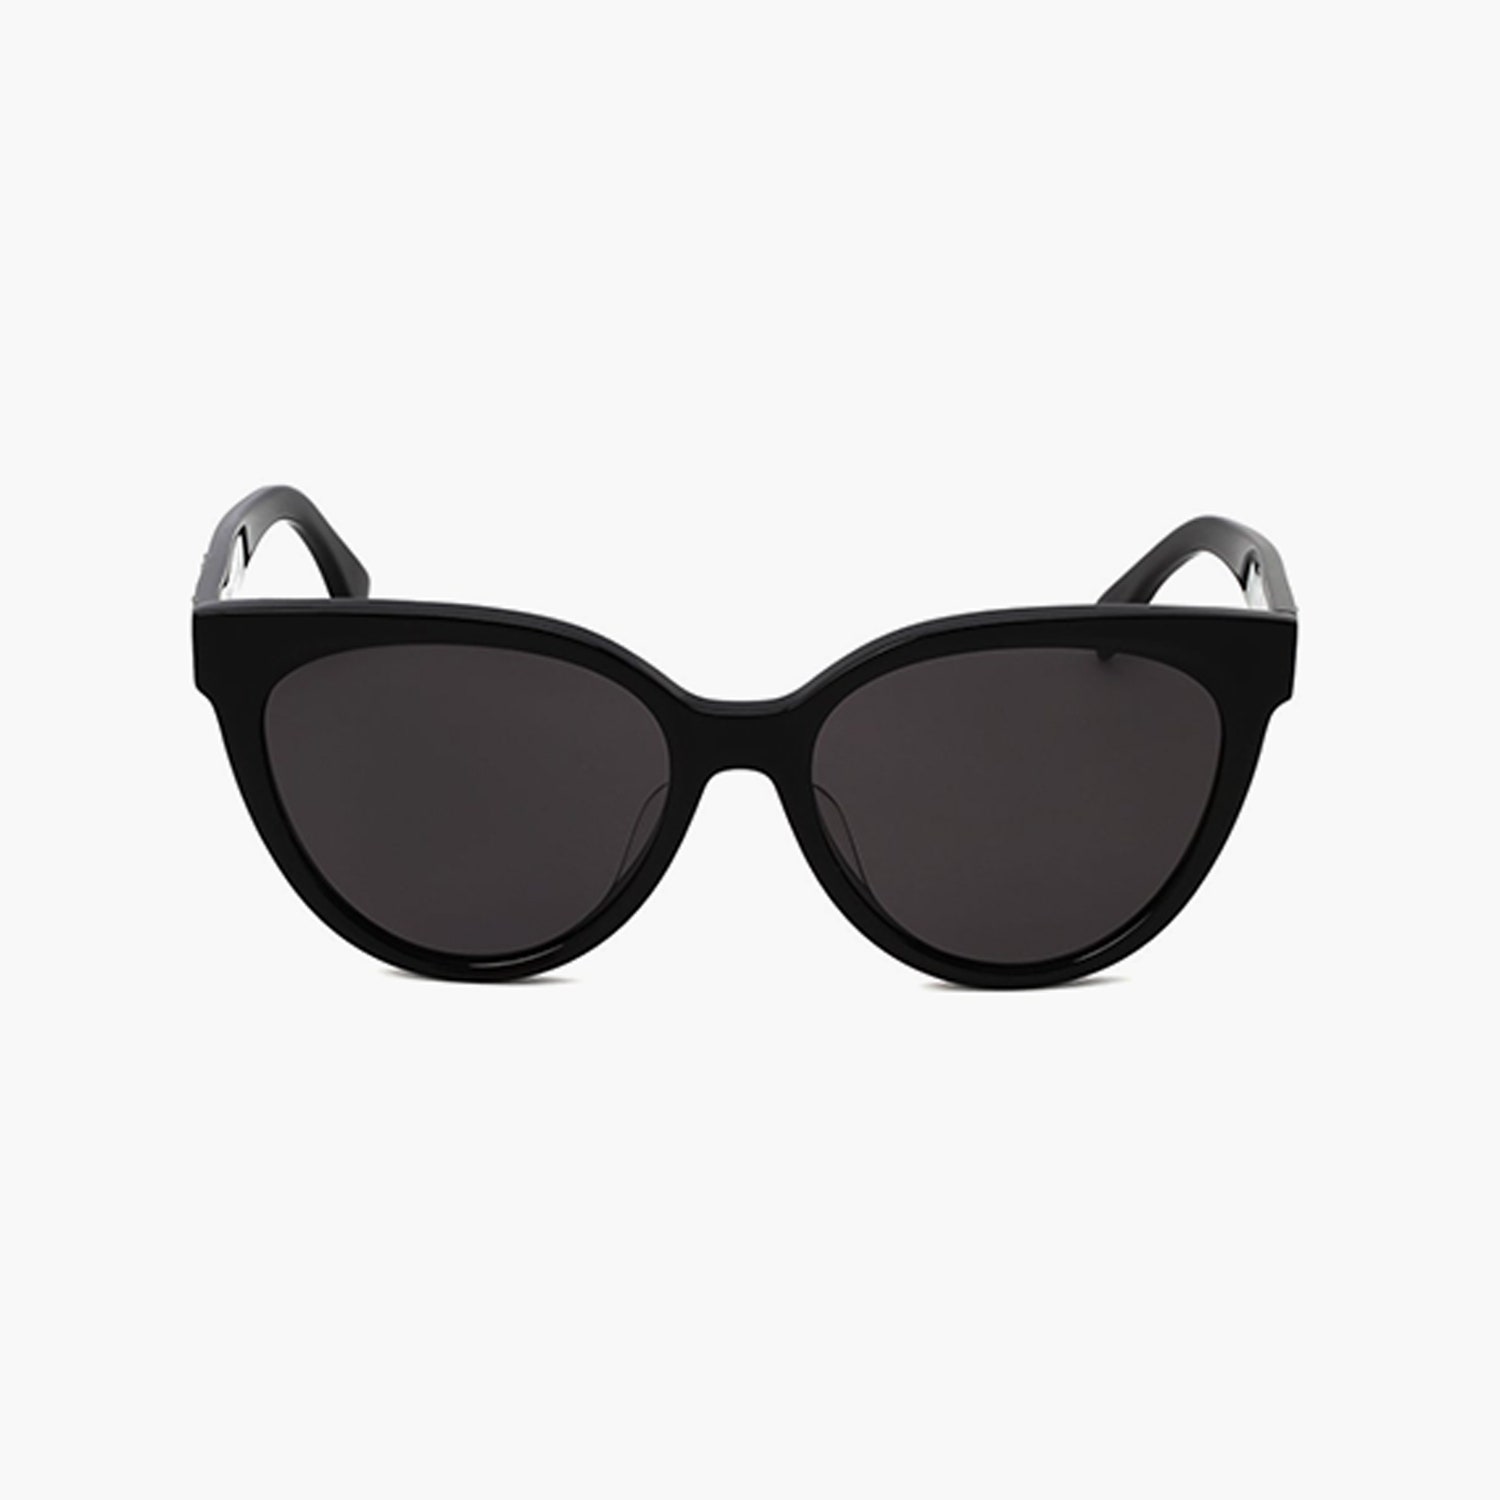 Солнцезащитные очки Fendi 23800 рублей tsum.ru